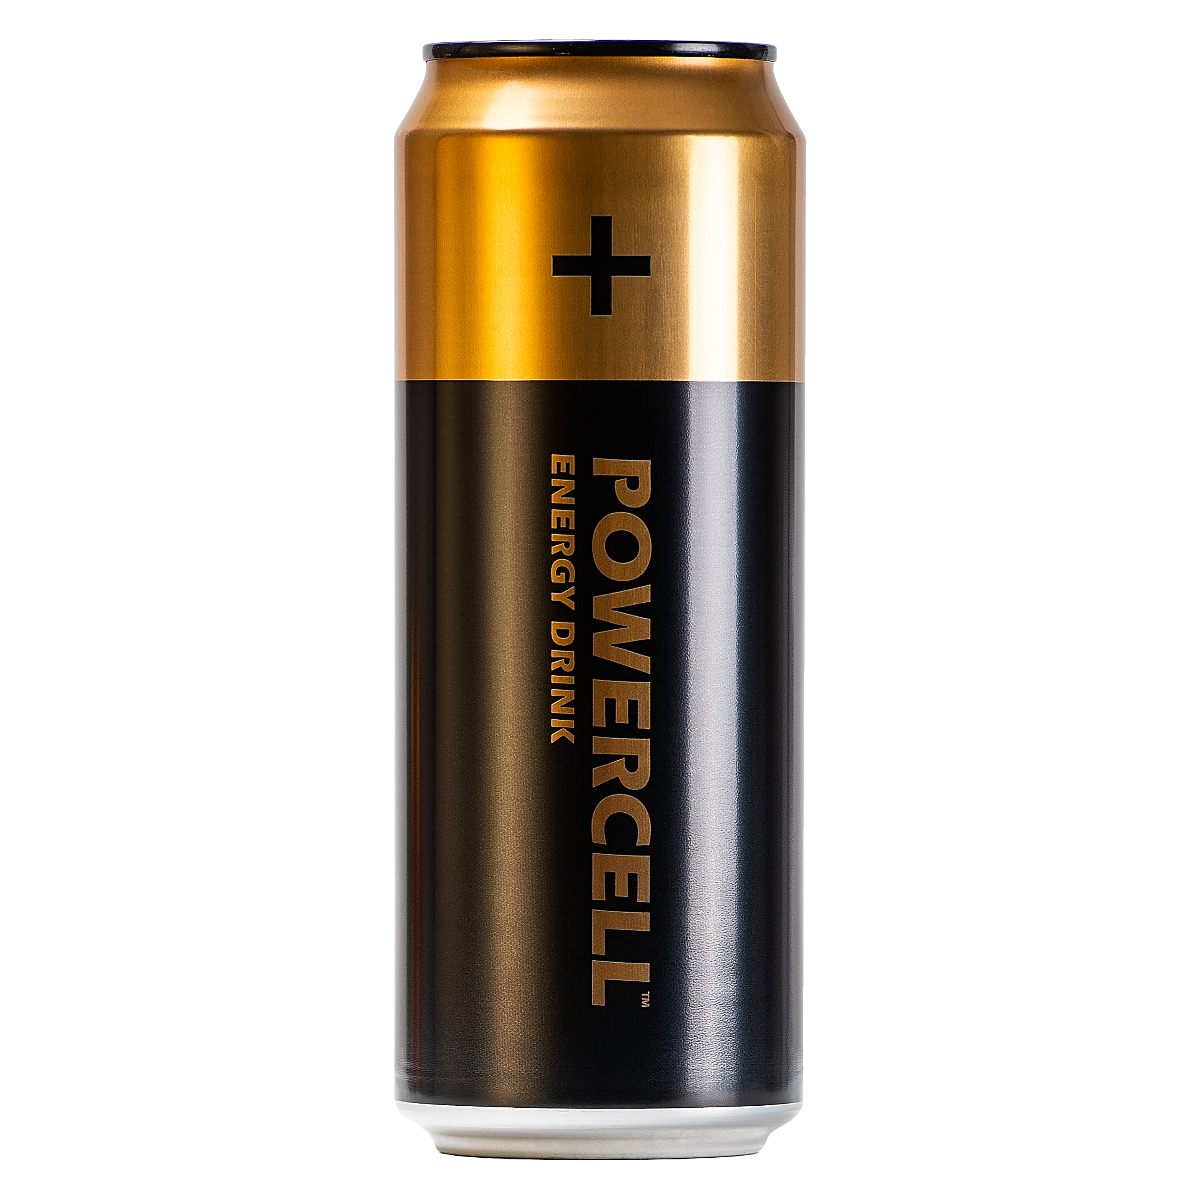 Энергетический напиток Powercell Original (Пауэрселл Ориджинал) батарейка безалкогольный 450ml (12шт упак)